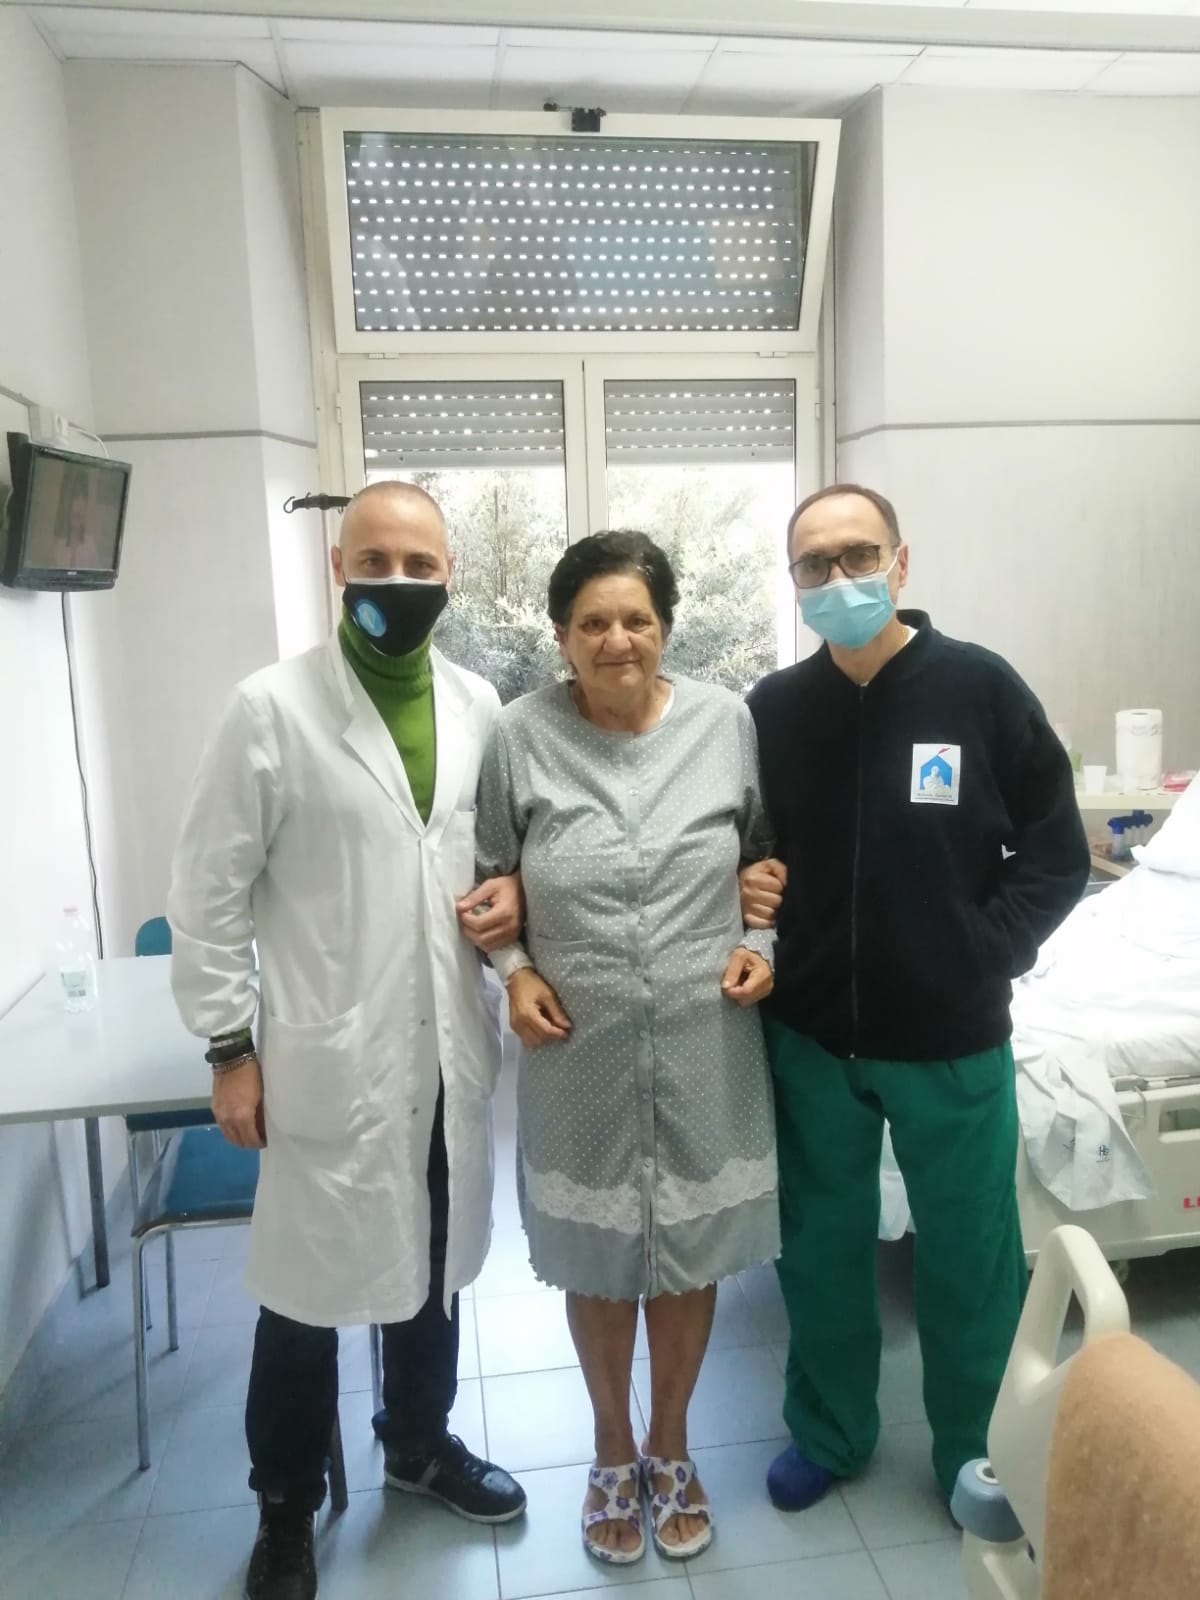 Tumore, al centro la paziente Luisa Cicatelli, a sinistra Giuseppe Arenga, a destra Giovanni Vennarecci